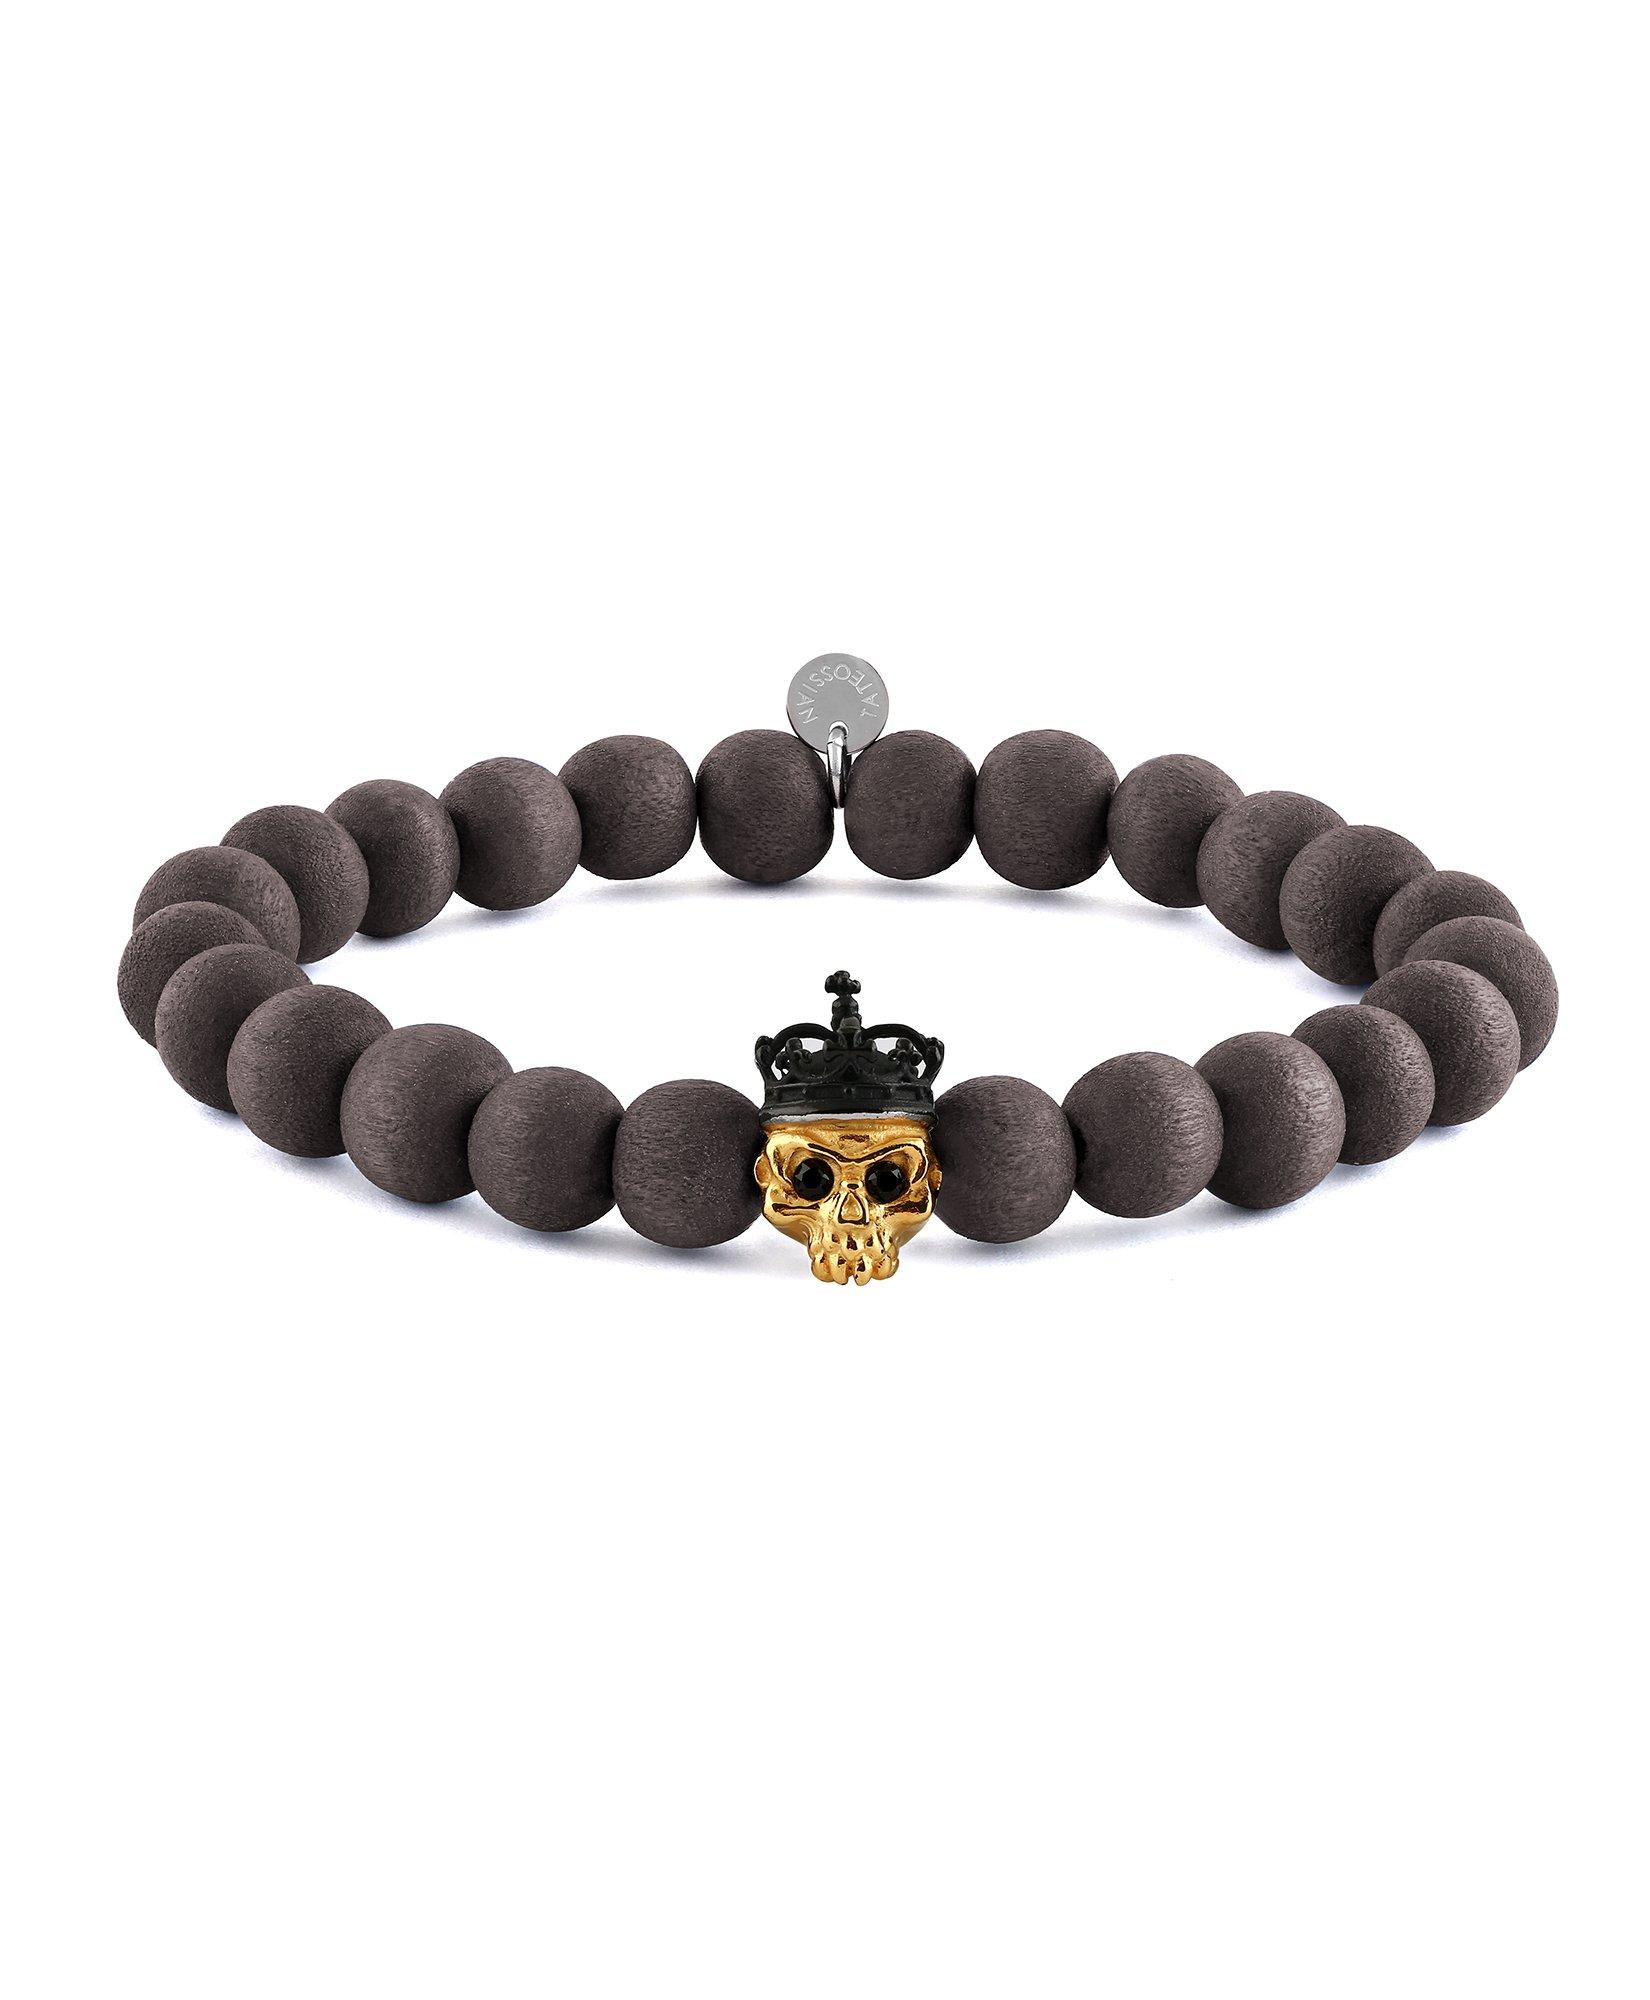 King Skull Bracelet  image 0